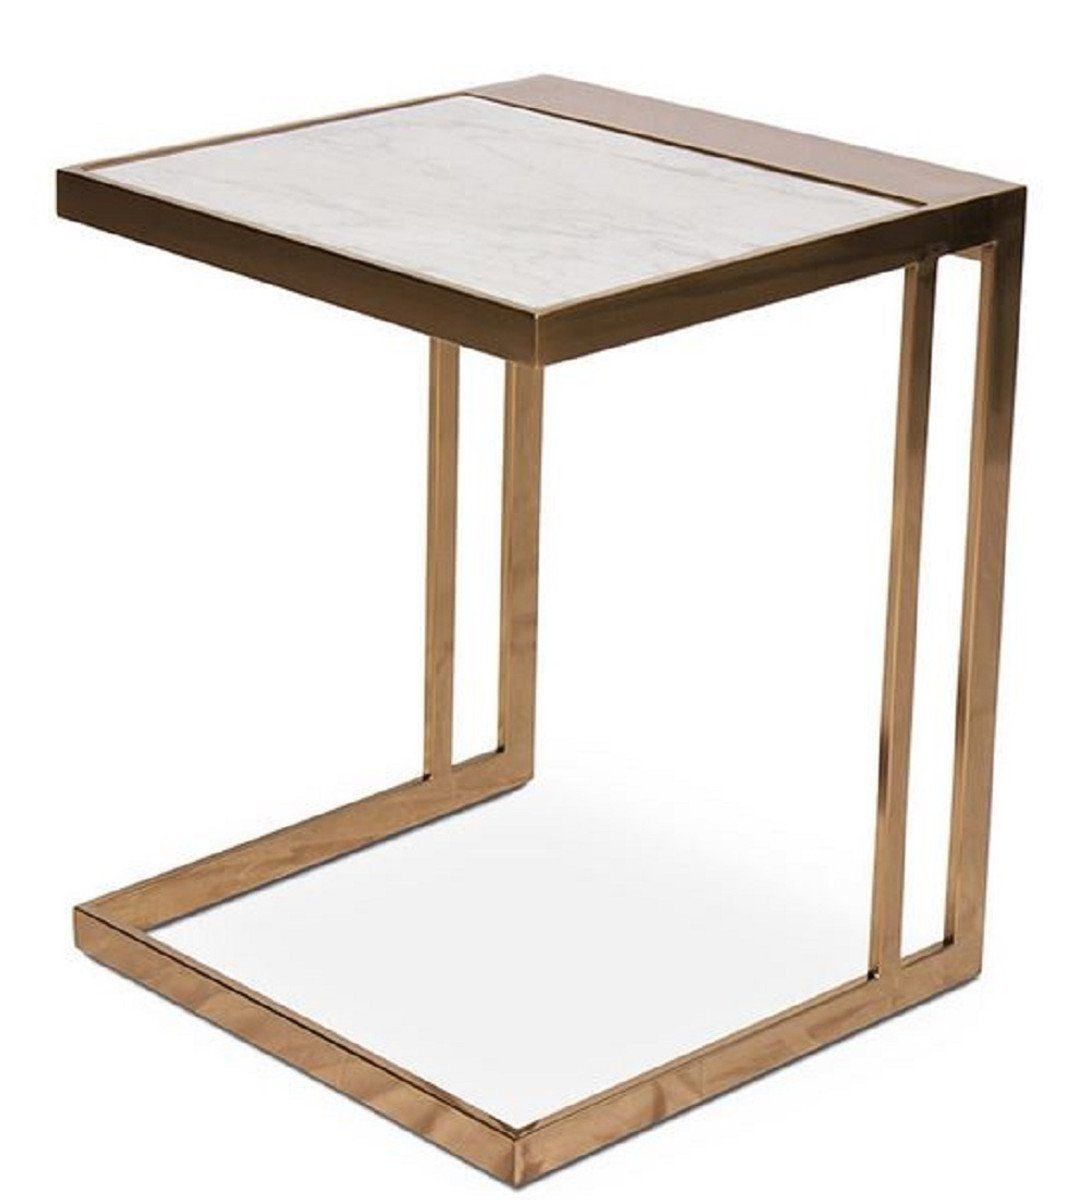 Casa Padrino Beistelltisch Designer Beistelltisch Rosegold / Weiß 40 x 40 x H. 50 cm - Edelstahl Tisch mit Marmorplatte